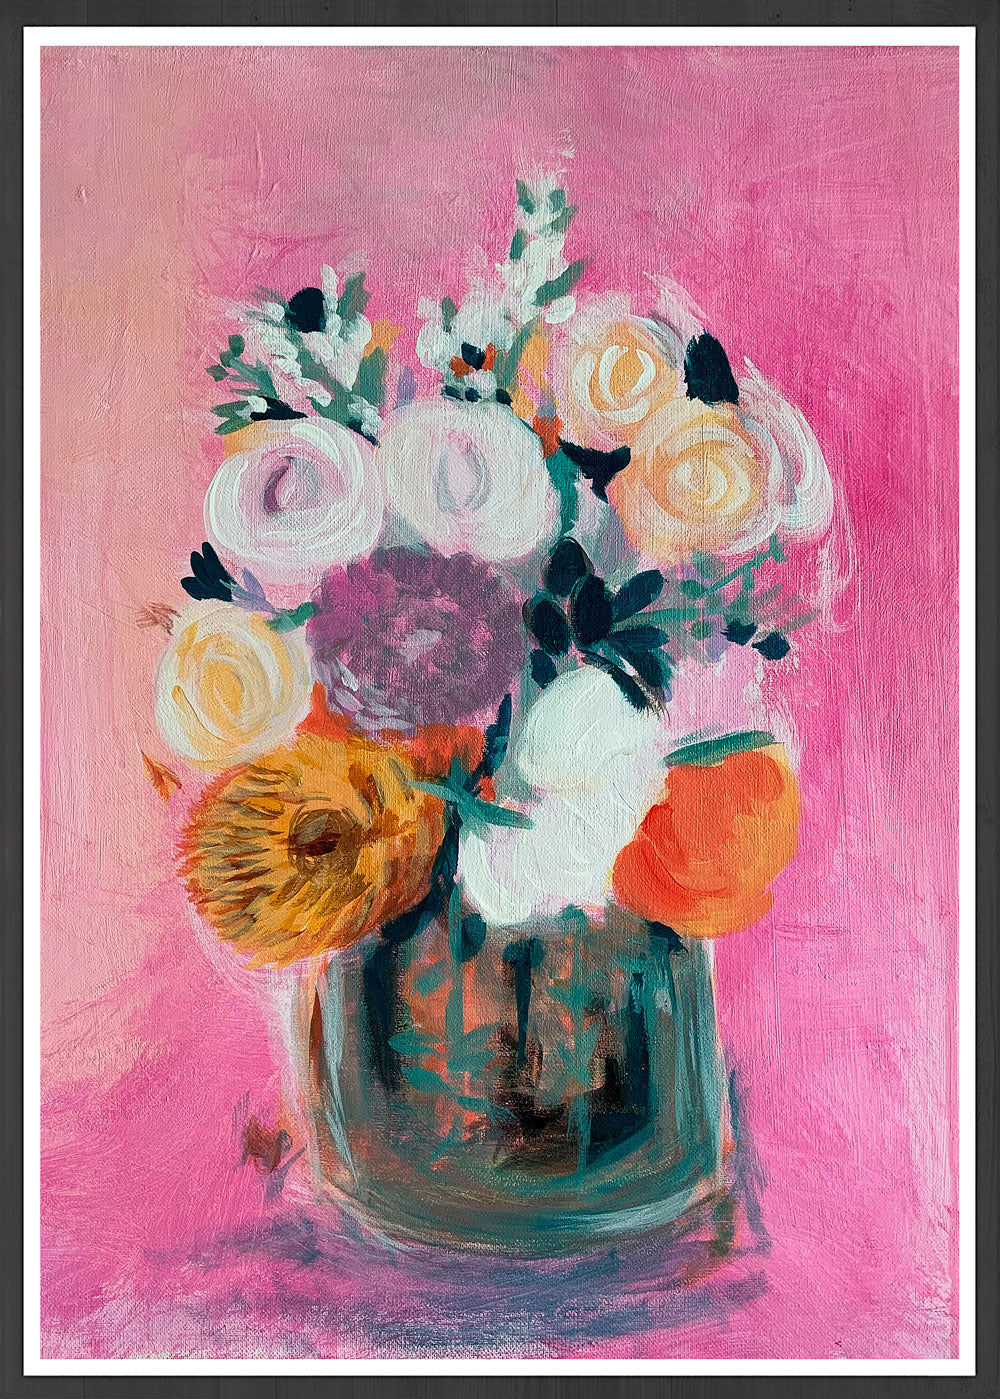 Pink Floral Bouquet Print